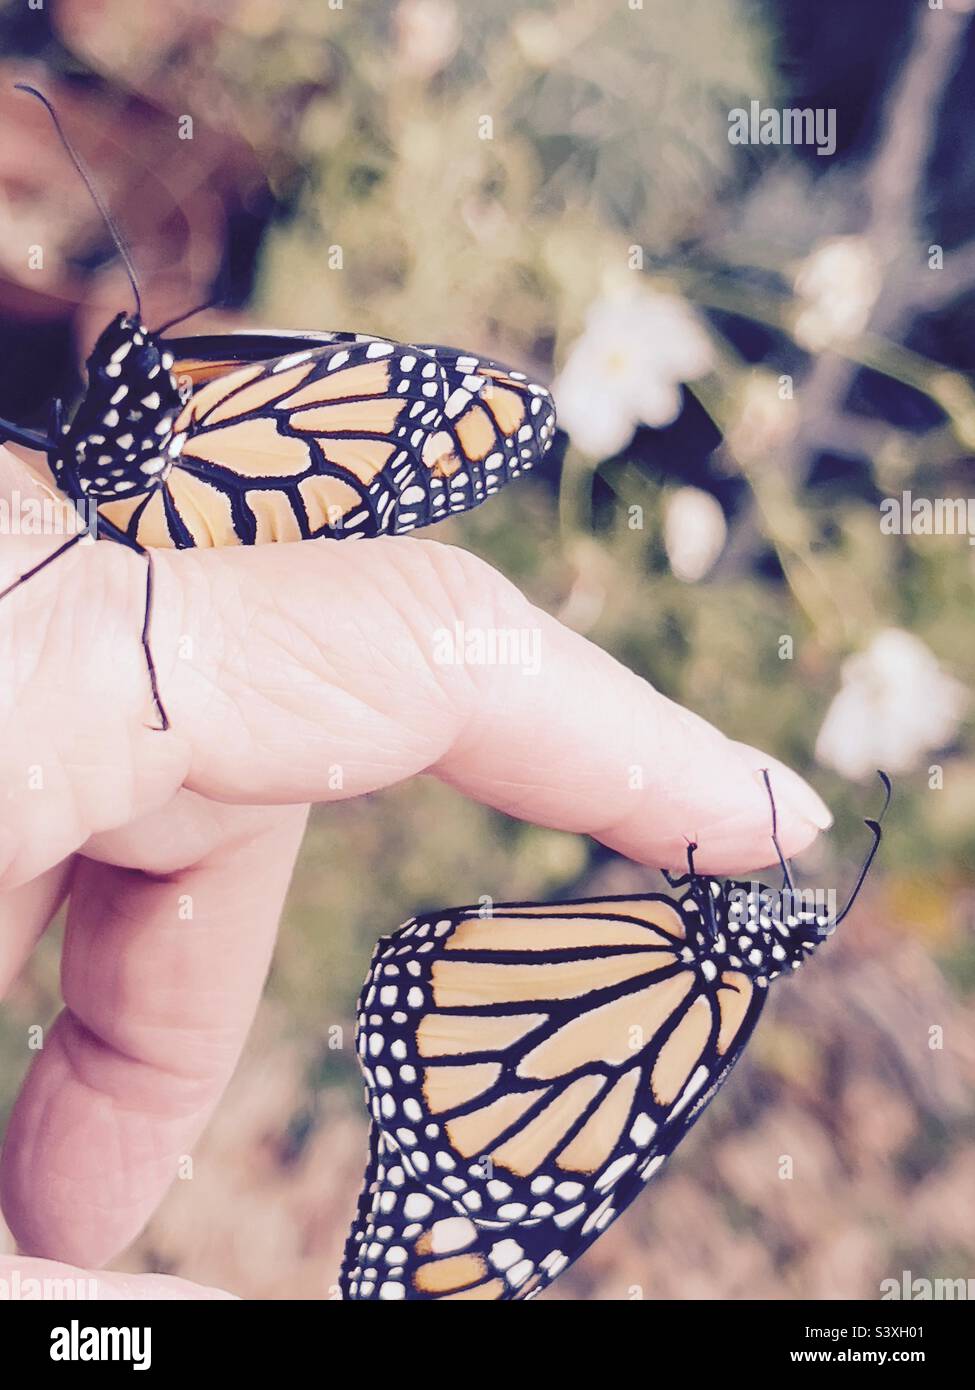 Monarch Schmetterlinge auf einem Finger Stockfoto